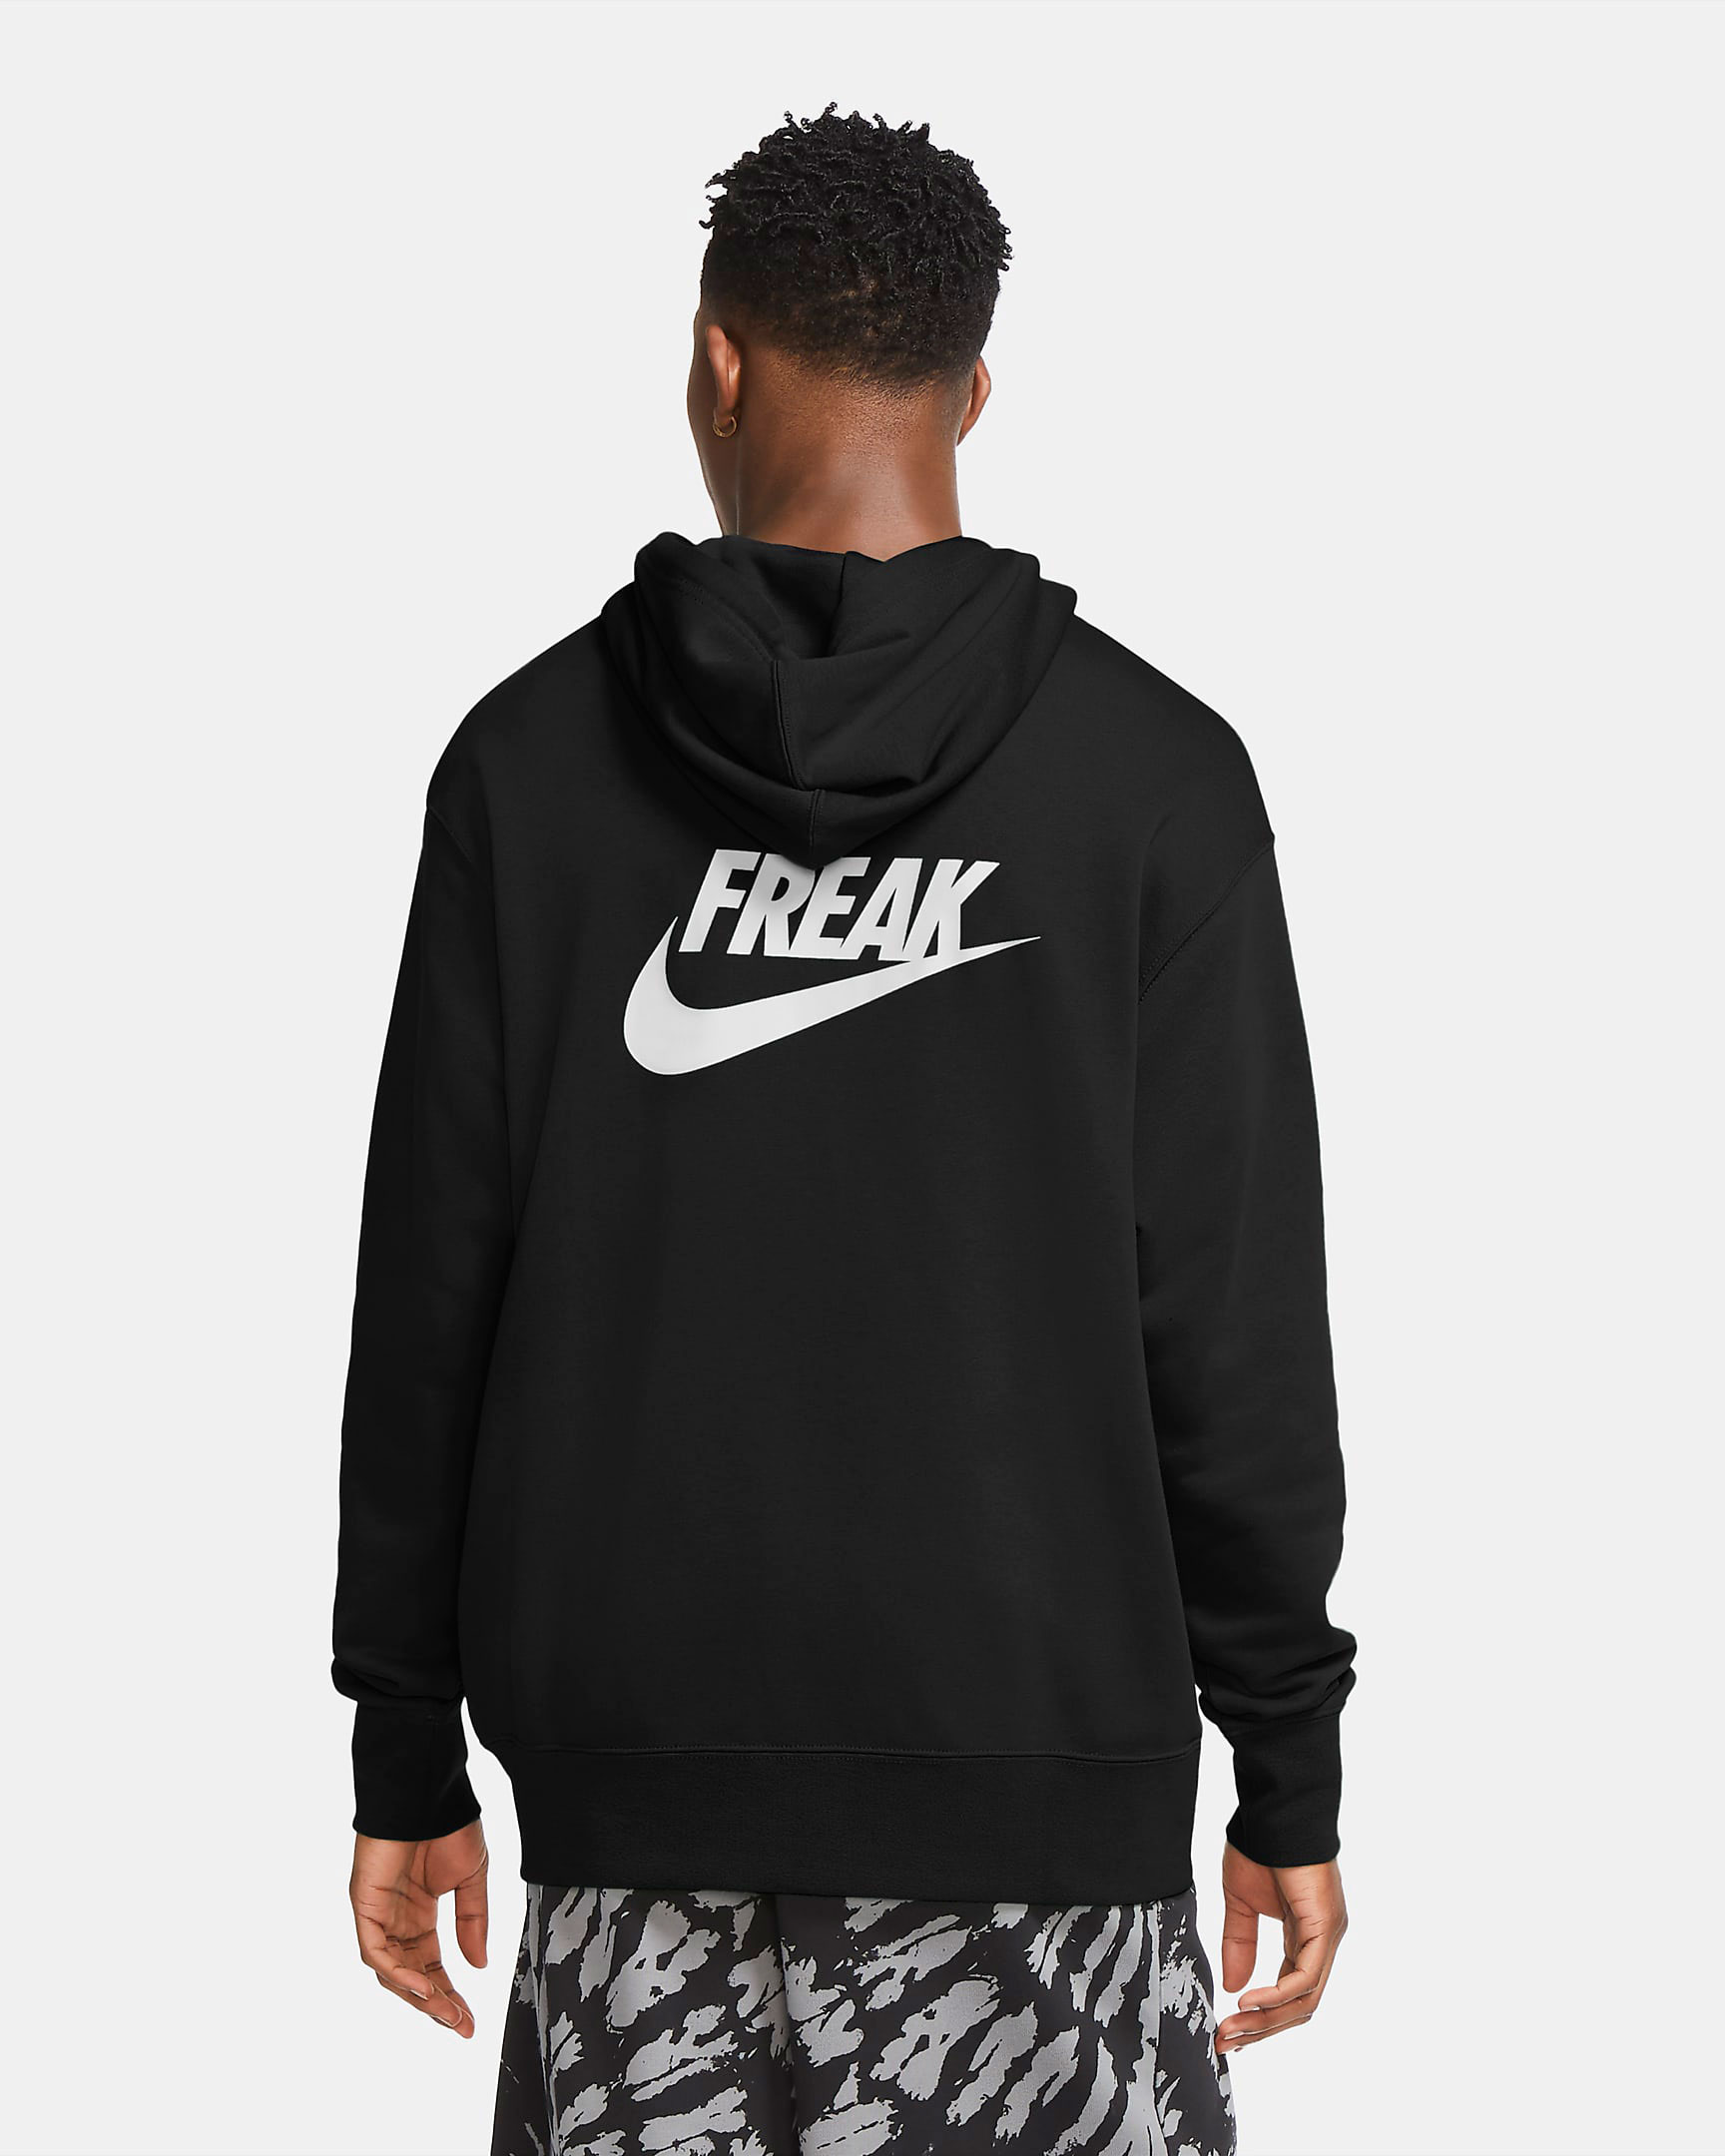 nike-zoom-freak-2-black-white-hoodie-2